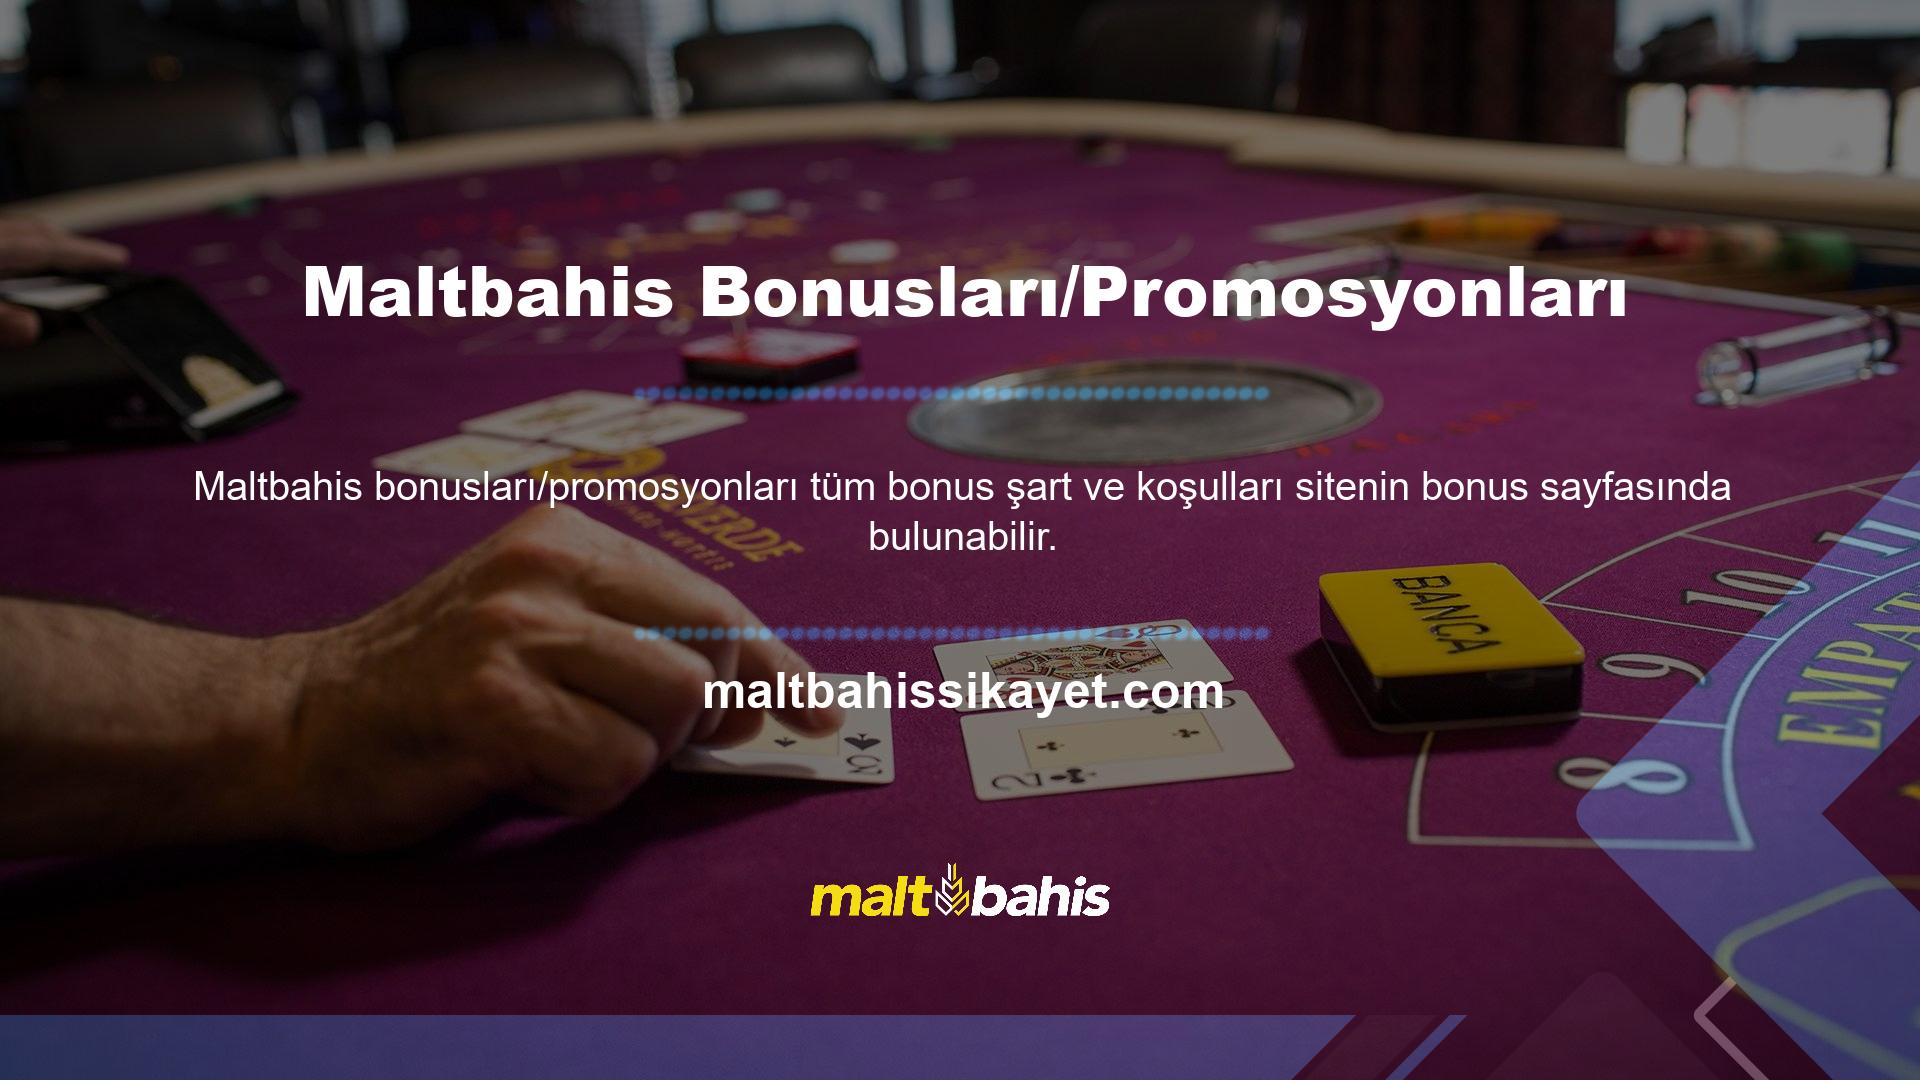 Maltbahis web sitesindeki bonus sayfasındaki tüm güncellemeler ve yeni bonus fırsatları kullanıcılara SMS ve e-posta yoluyla iletilecektir